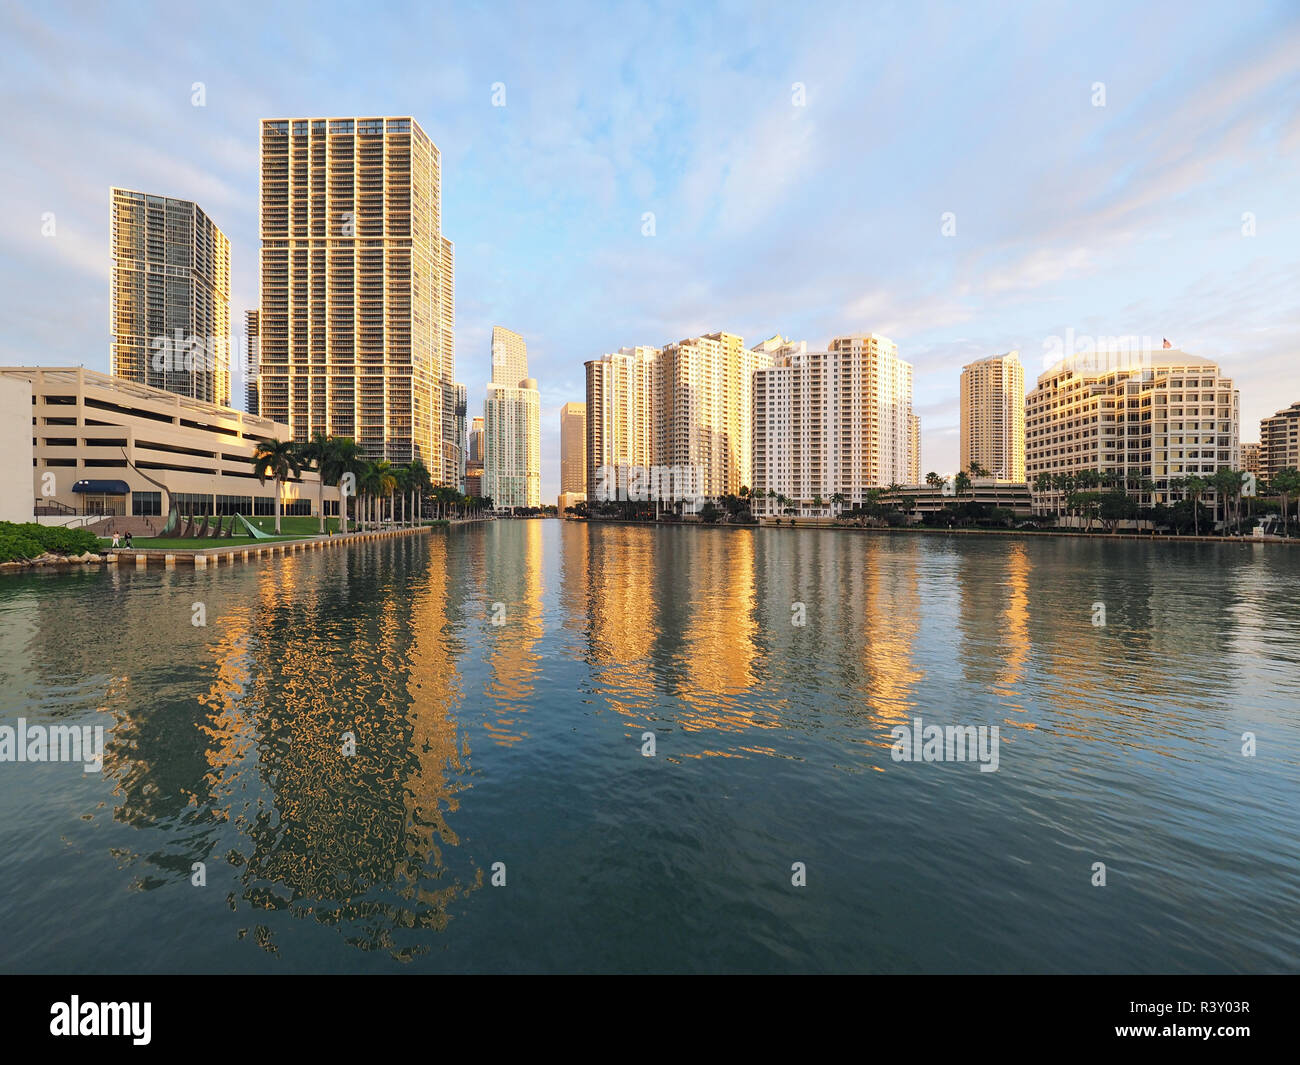 Miami, Floride 11-24-2018 Les bâtiments de la ville de Miami et de Brickell Key, en Floride, au début de la lumière du matin. Banque D'Images